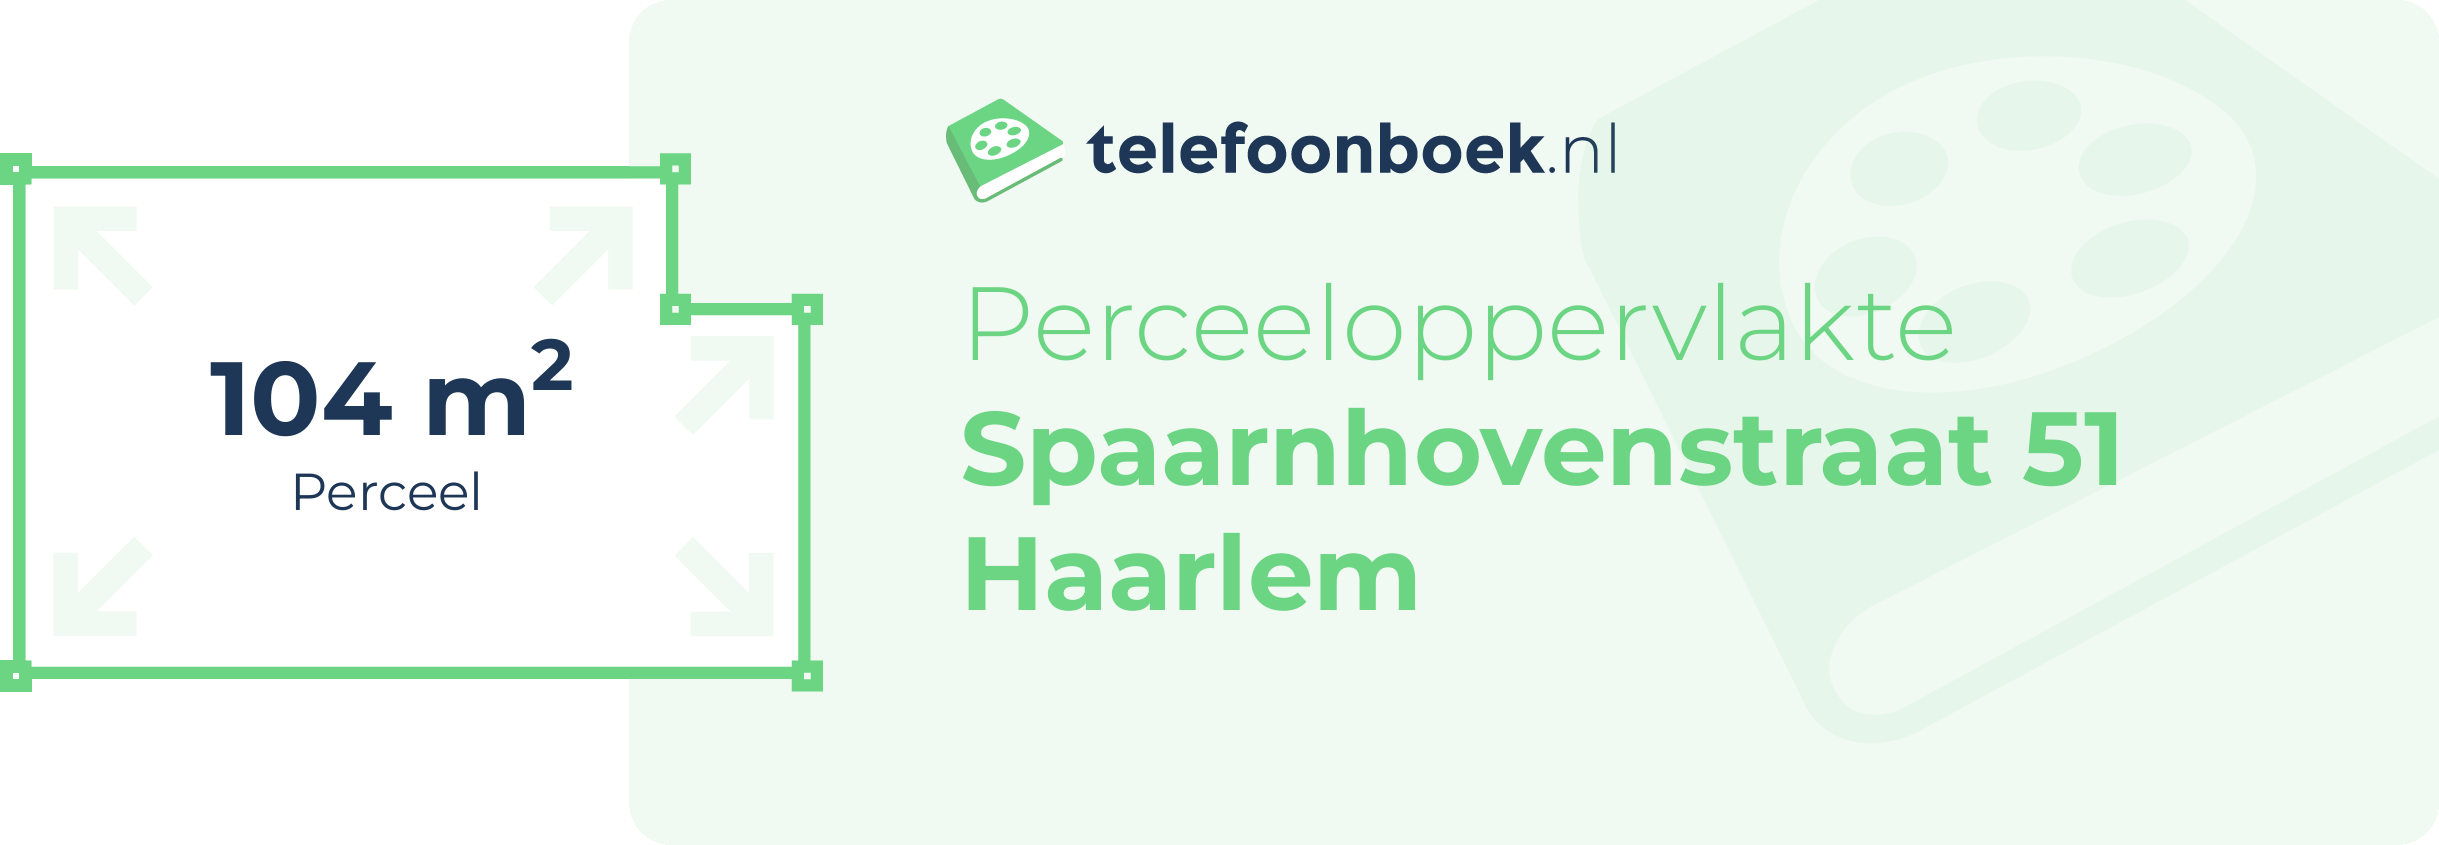 Perceeloppervlakte Spaarnhovenstraat 51 Haarlem